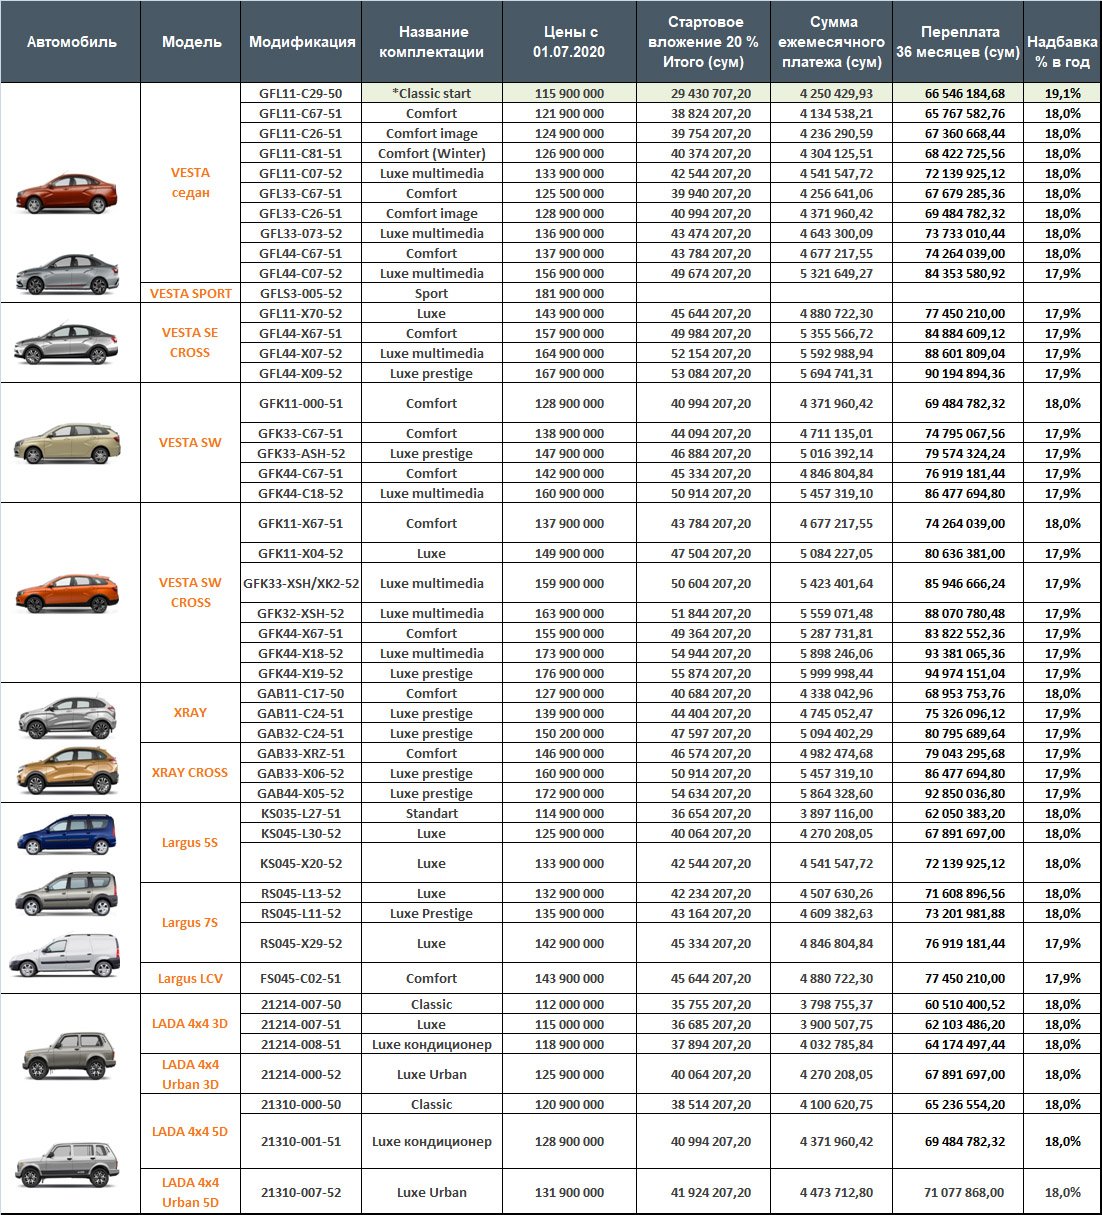 Список автомобилей под санкциями